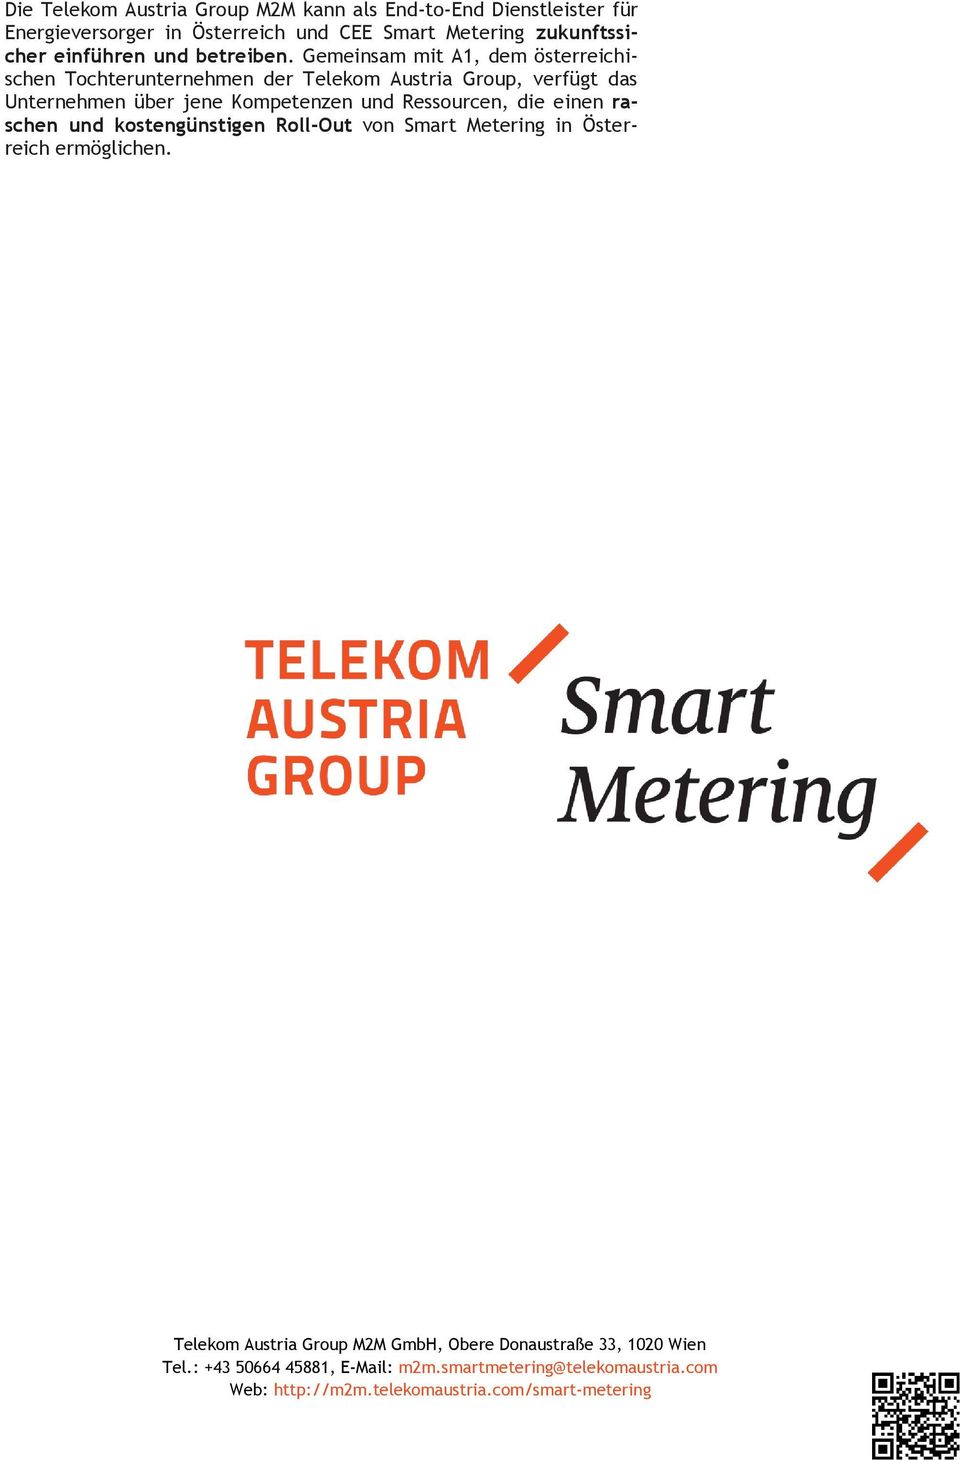 Gemeinsam mit A1, dem österreichischen Tochterunternehmen der Telekom Austria Group, verfügt das